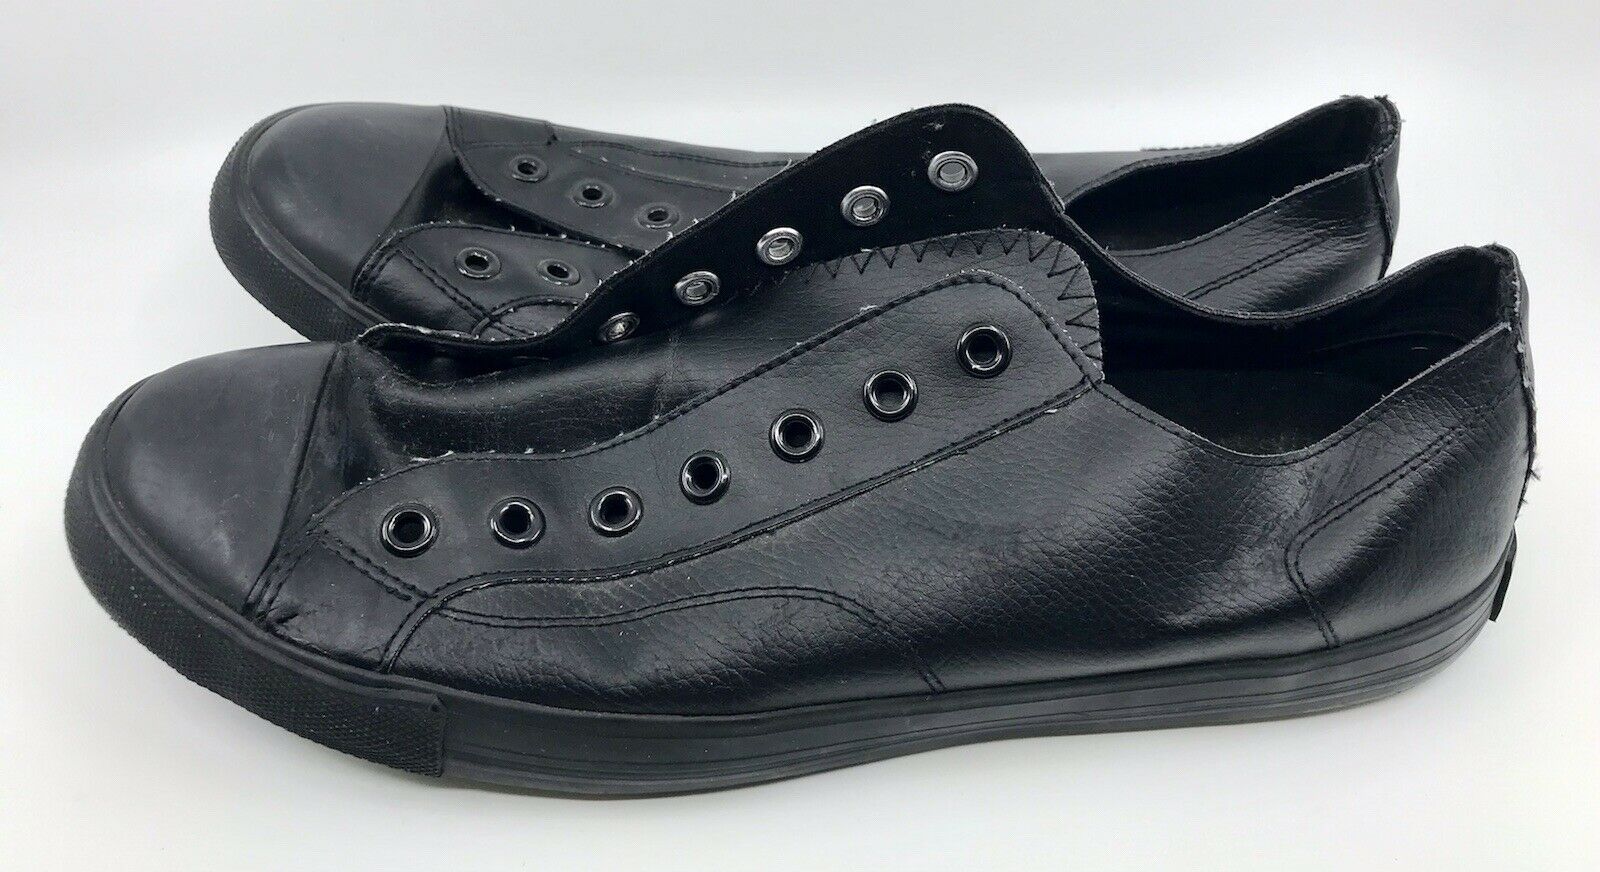 Men's Airwalk Black Leather Shoes Size 14 EUC (No Laces)